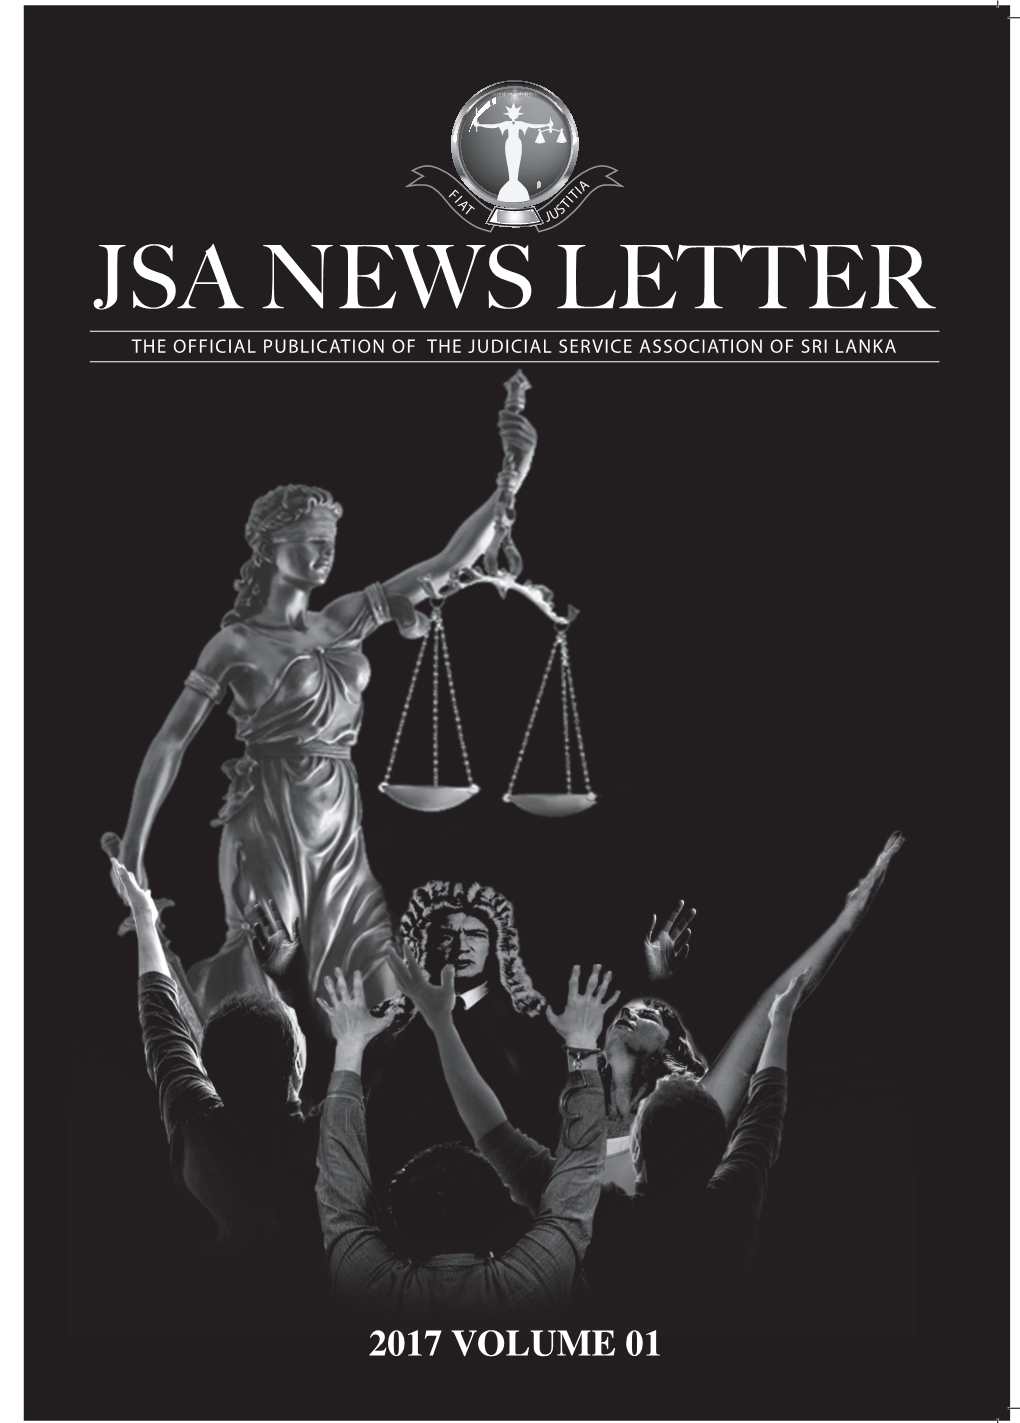 2017 Volume 01 JSA News Letter FIAT JUSTITIA